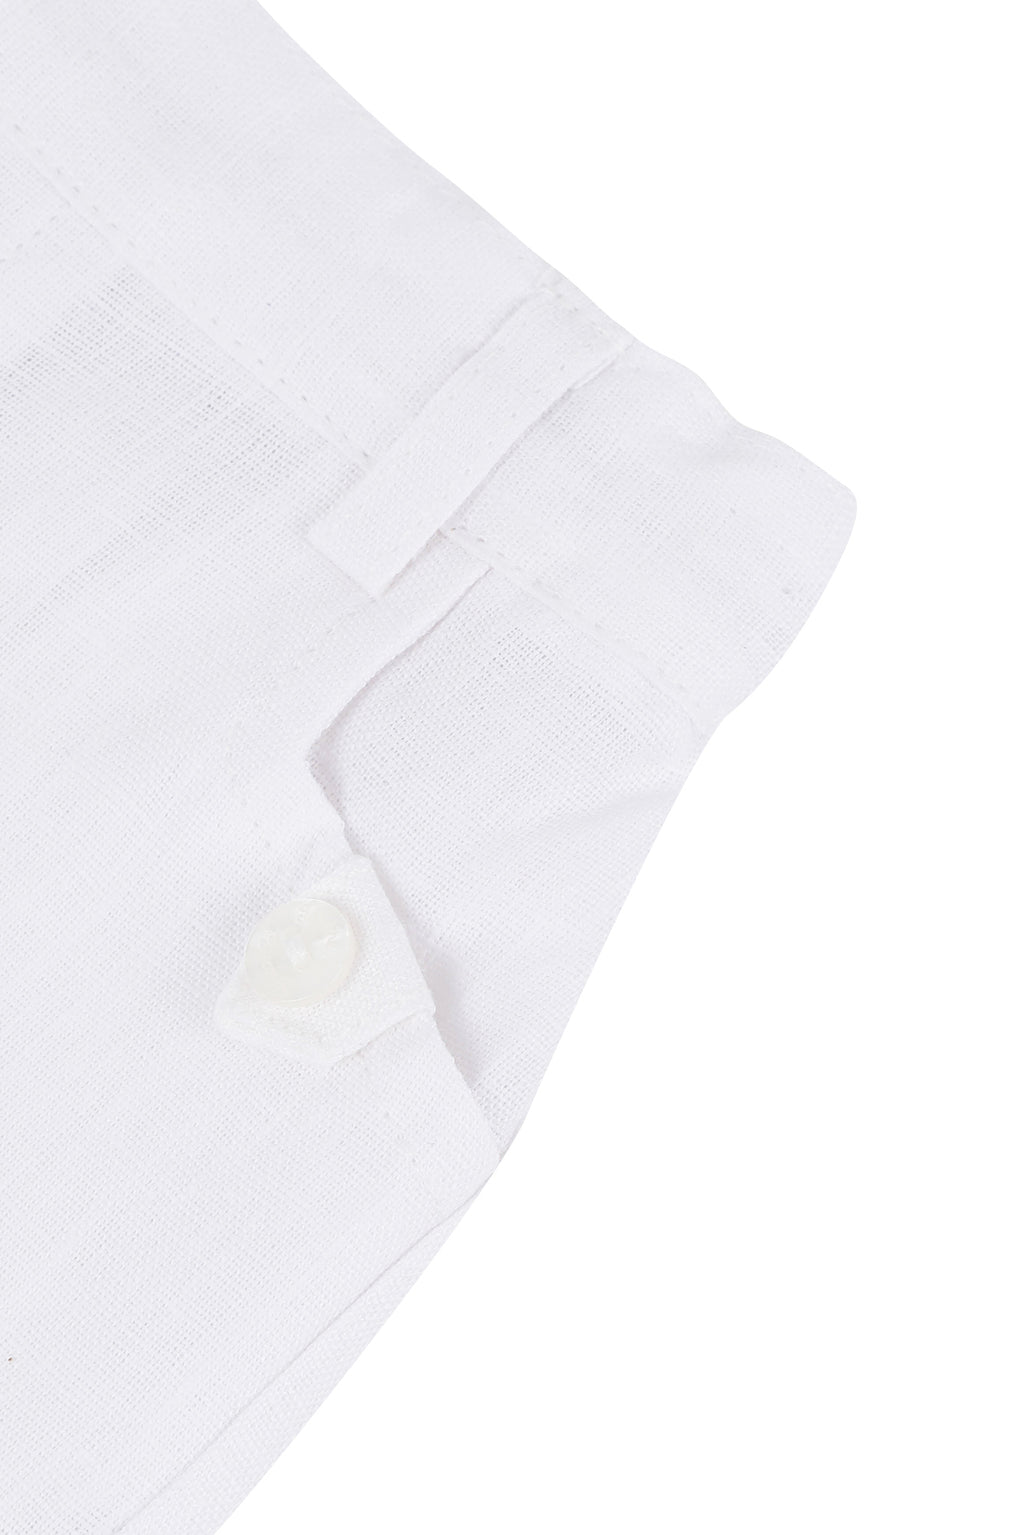 Short - White Linen